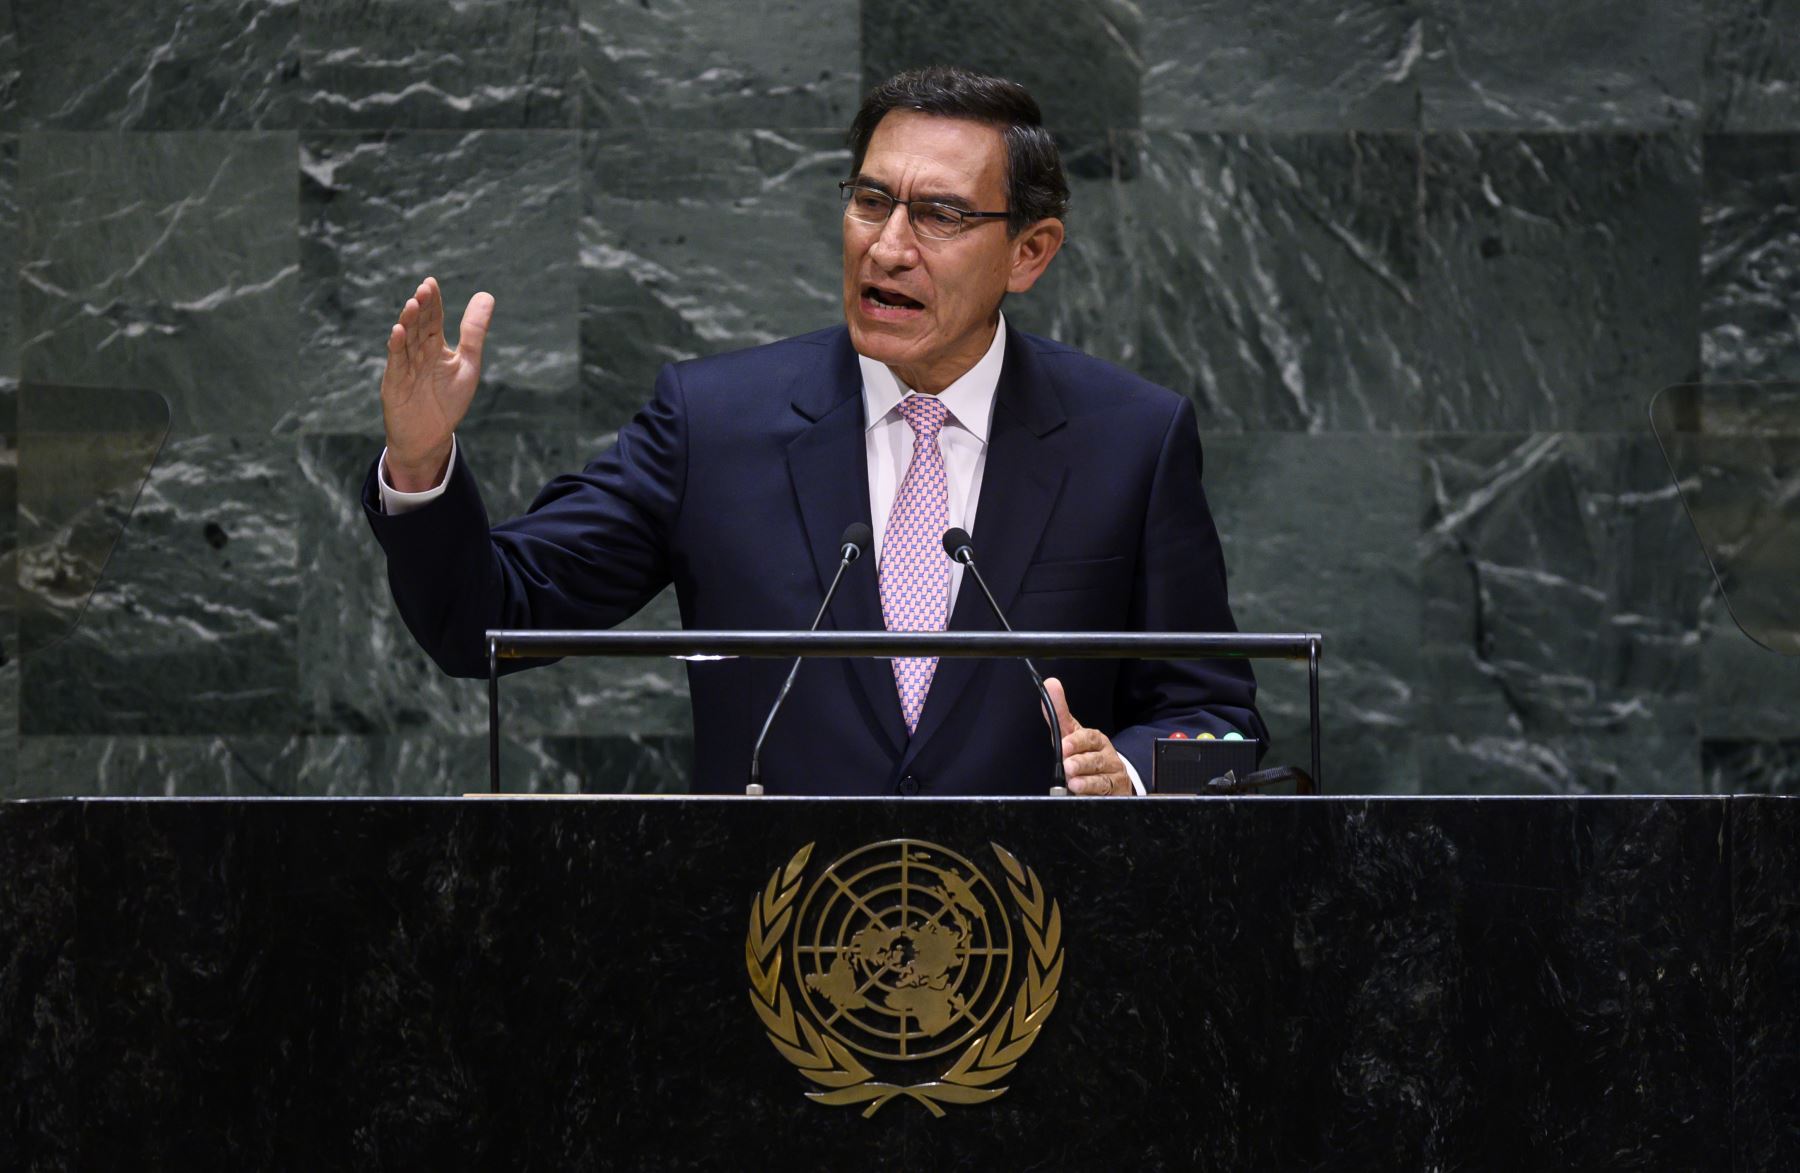 El presidente de Perú, Martin Vizcarra Cornejo, participa en la 74a sesión de la Asamblea General de las Naciones Unidas  en la ciudad de Nueva York. Foto: AFP